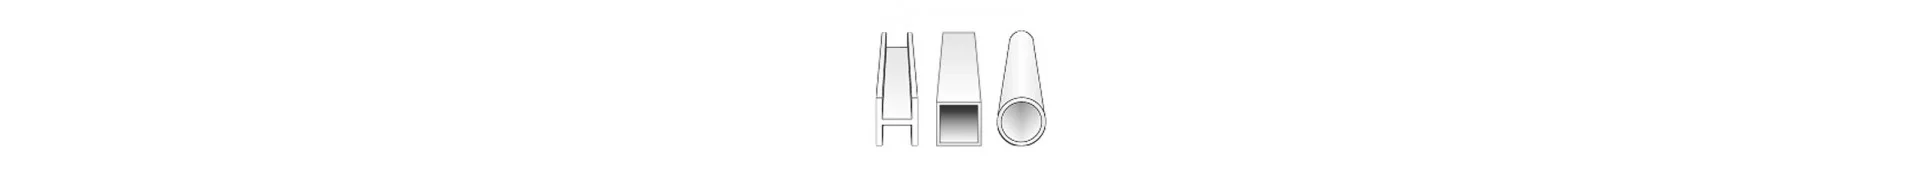 Profile und Platten in verschiedenen Metallen